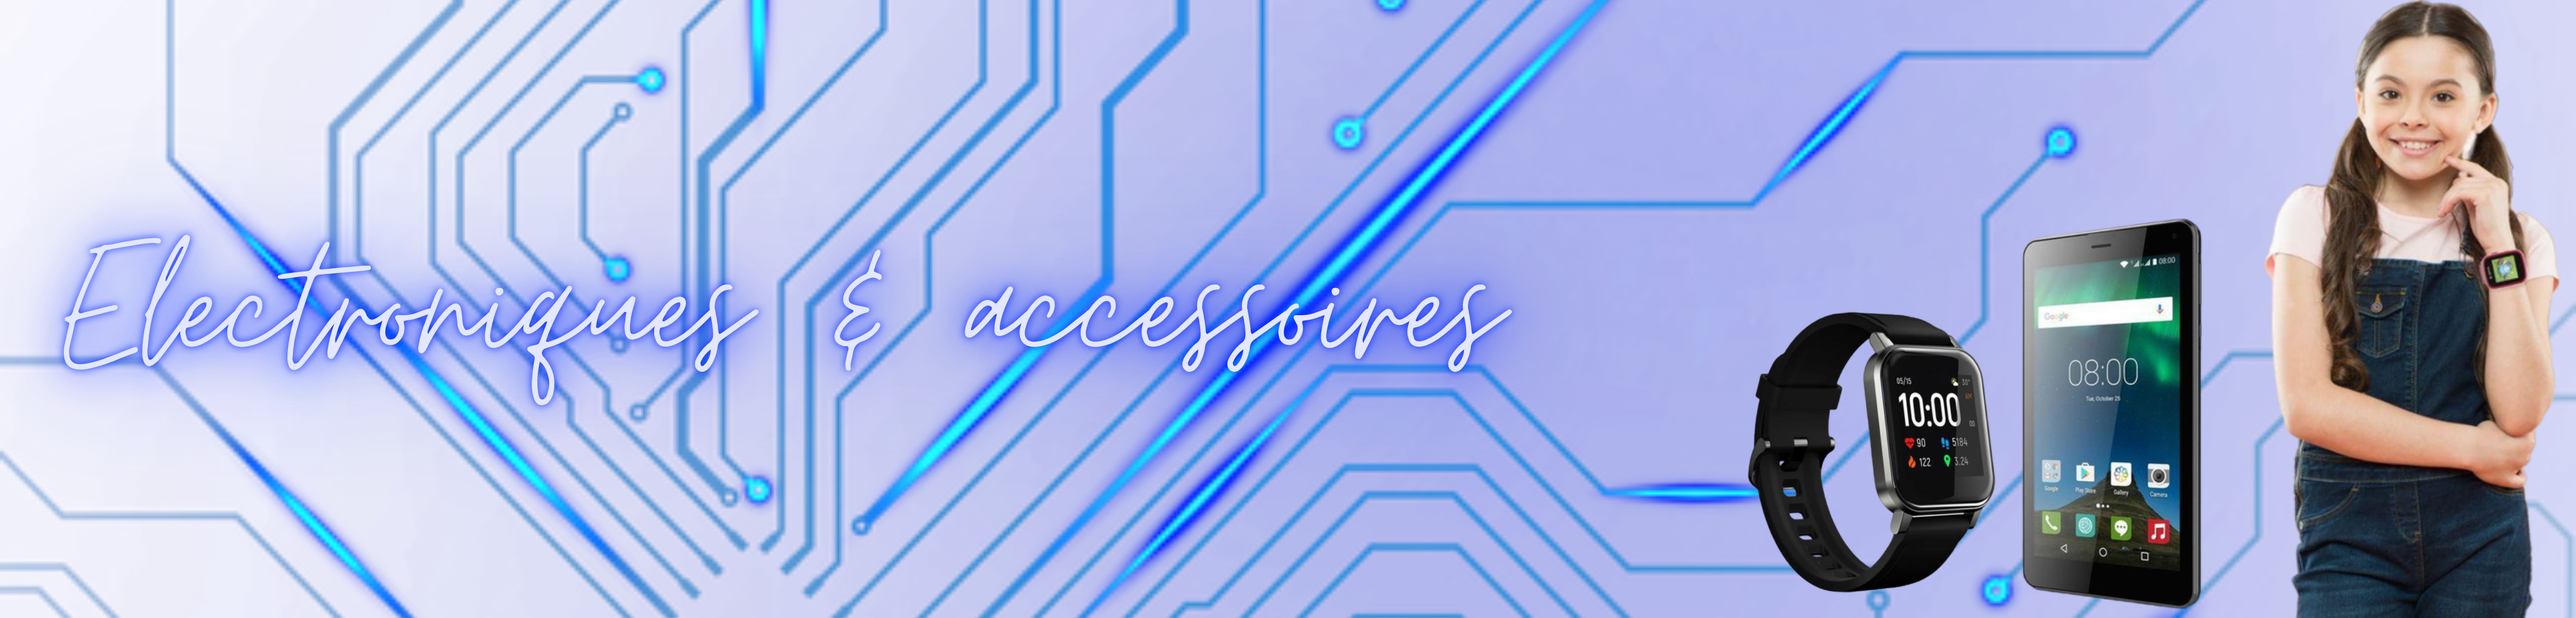 Electroniques & Accessoires